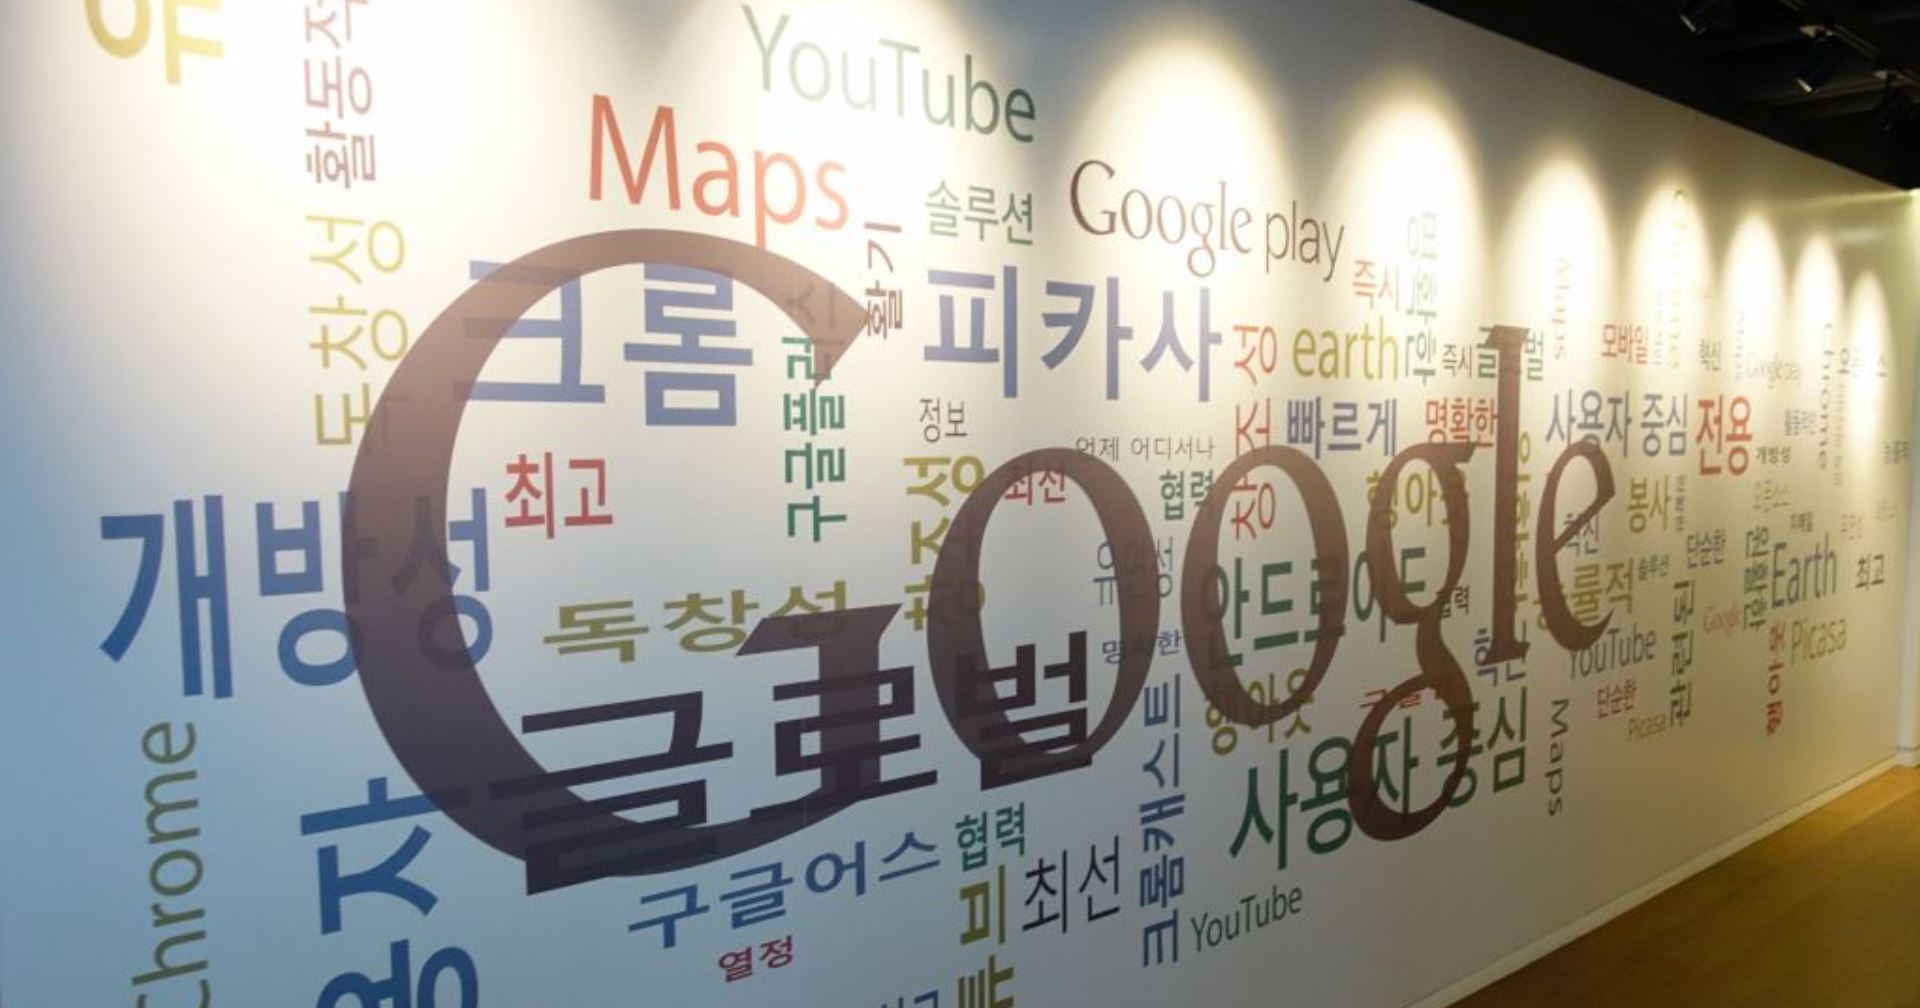 เกาหลีใต้สั่งปรับ Google เป็นเงินมหาศาล เพราะใช้ความได้เปรียบในตลาดเพื่อกีดกันทางการค้า